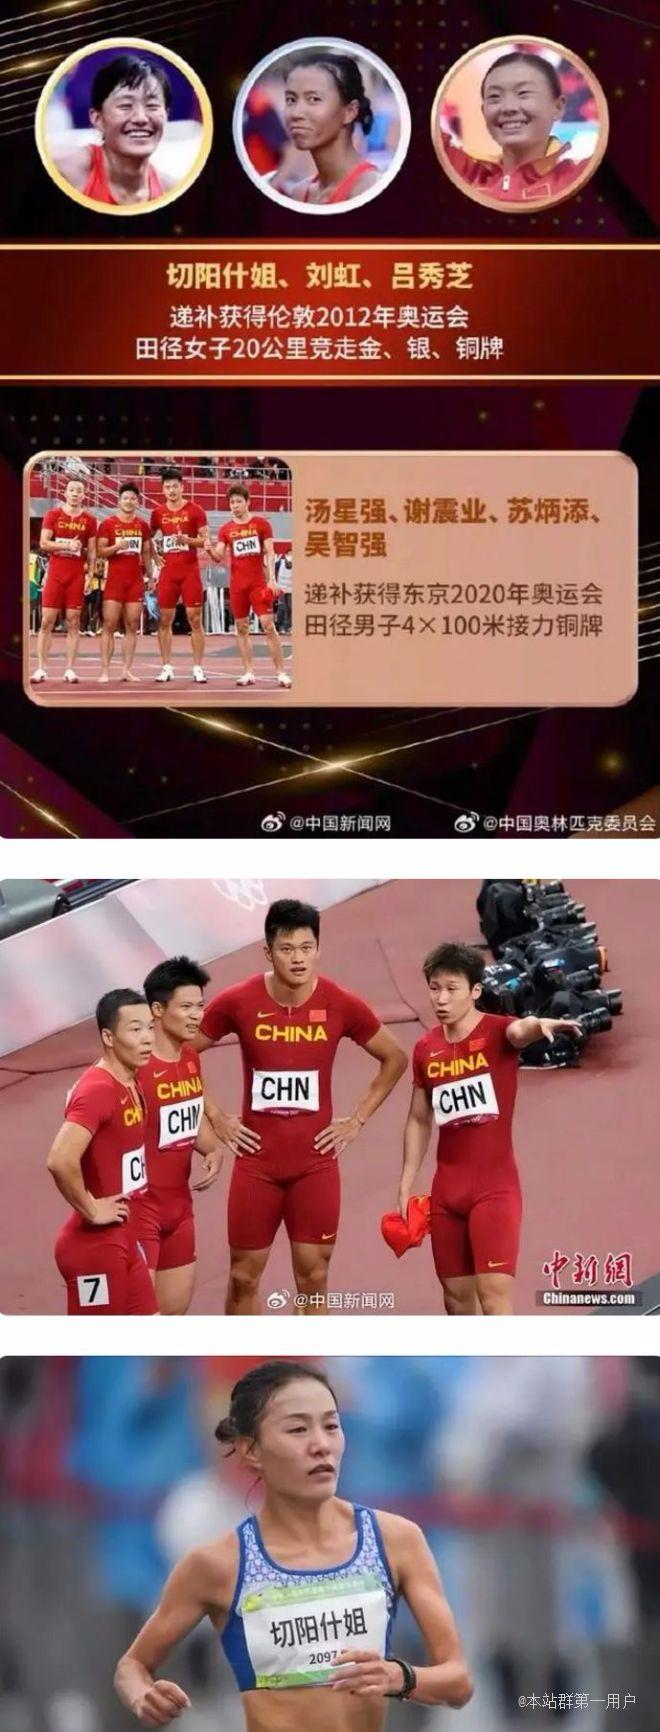 苏炳添的奥运奖牌来了，中国奥委会将在杭州举行递补奥运奖牌颁奖仪式